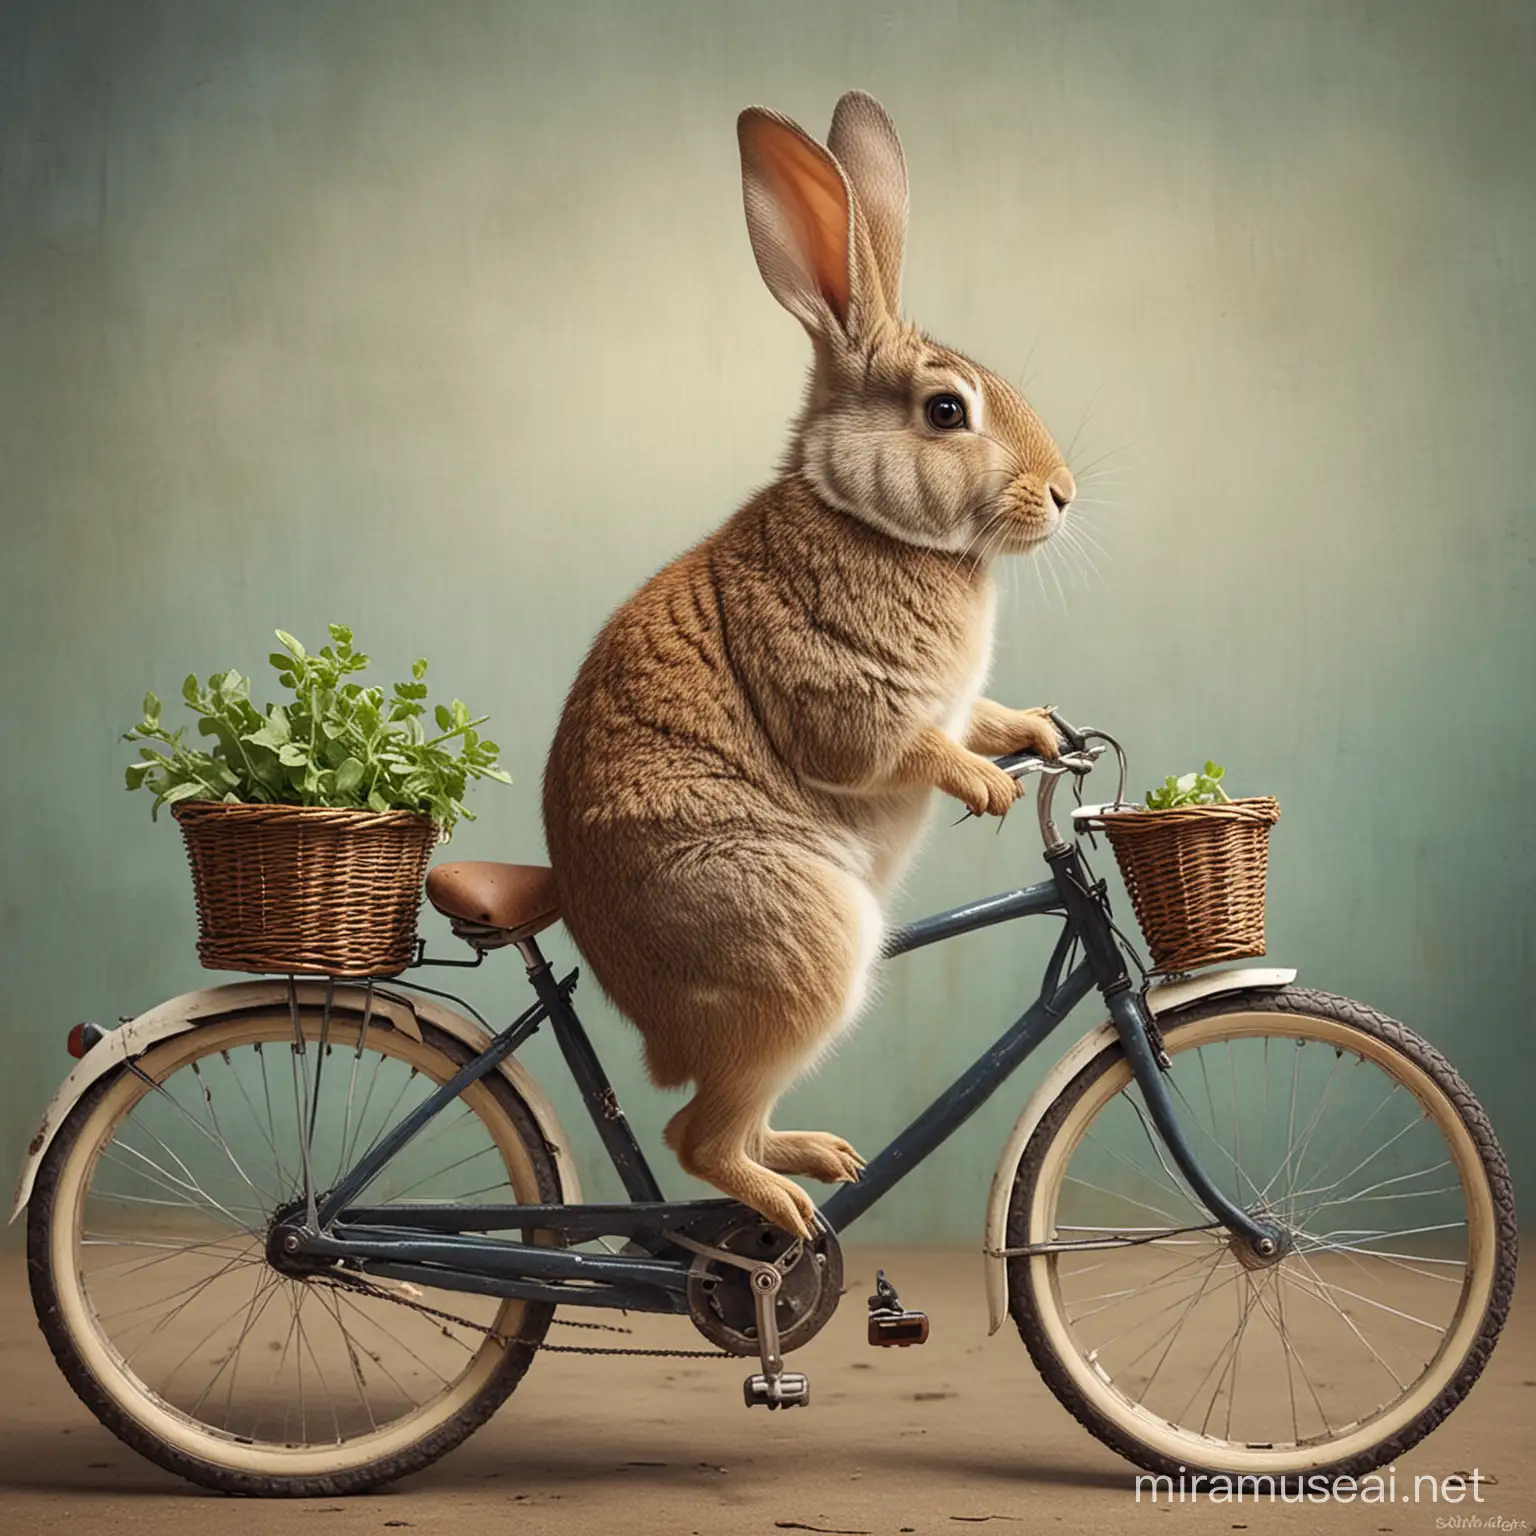 Adorable Rabbit Riding a Bicycle Through a Sunny Meadow